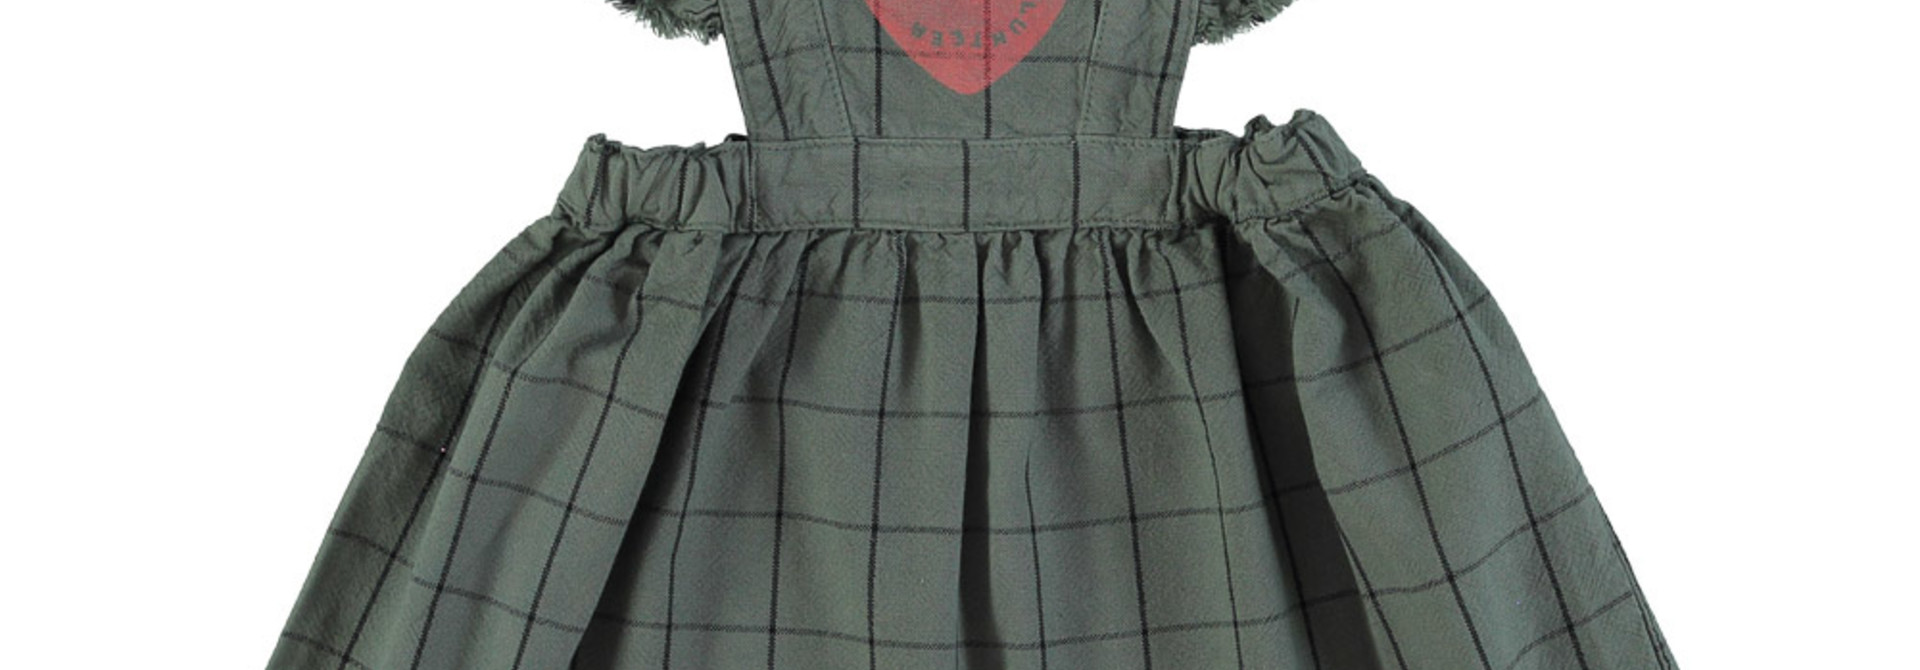 short sleeveless dress - green checkered w/ heart print